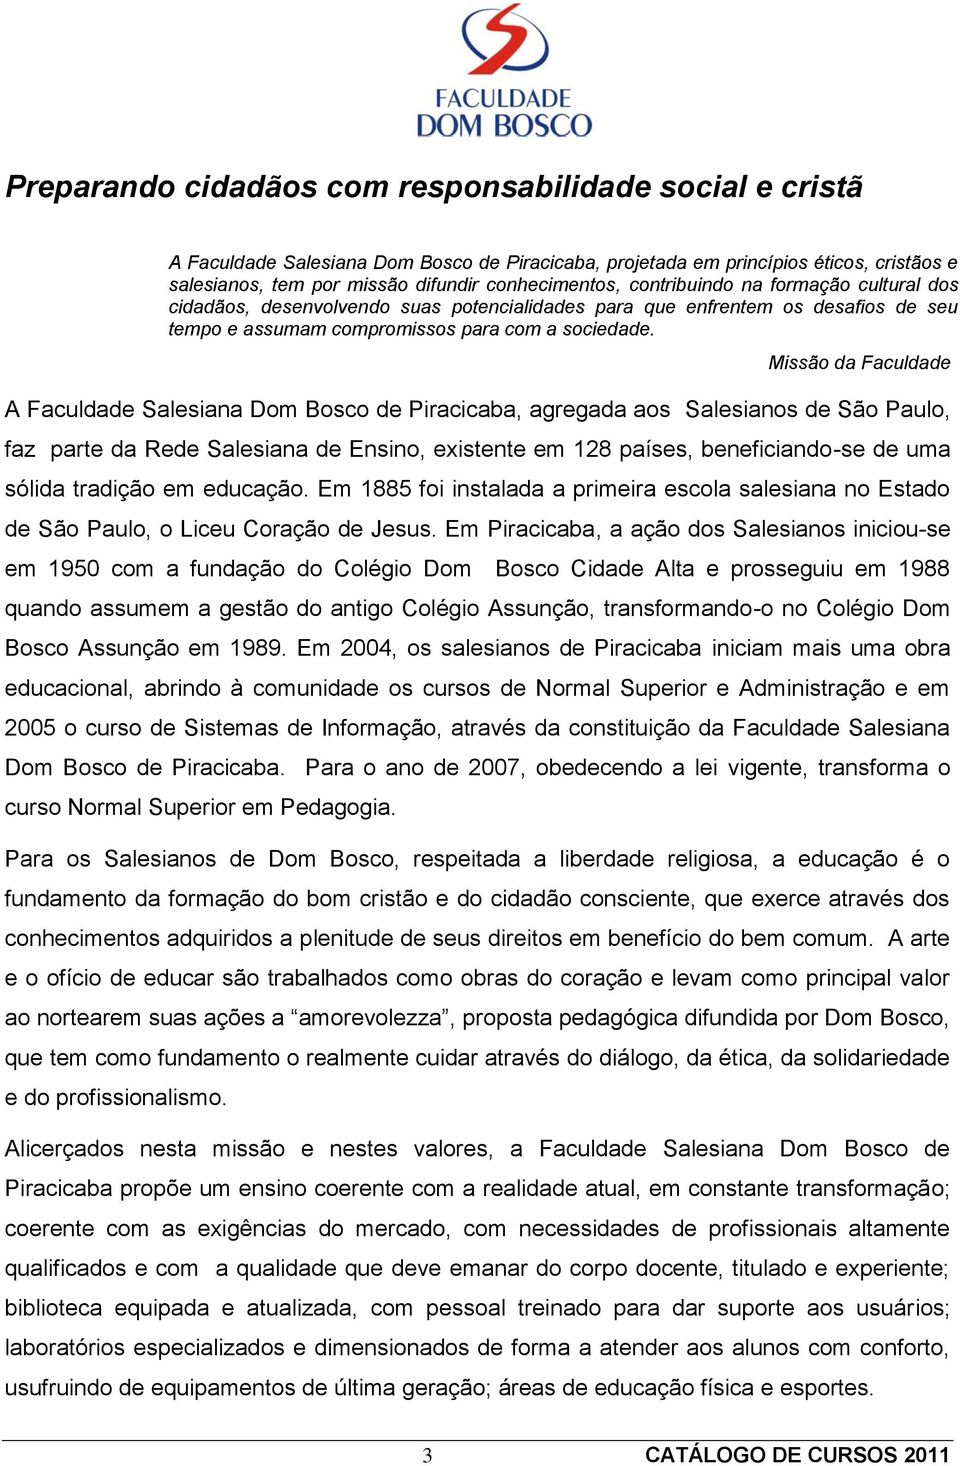 Missão da Faculdade A Faculdade Salesiana Dom Bosco de Piracicaba, agregada aos Salesianos de São Paulo, faz parte da Rede Salesiana de Ensino, existente em 128 países, beneficiando-se de uma sólida